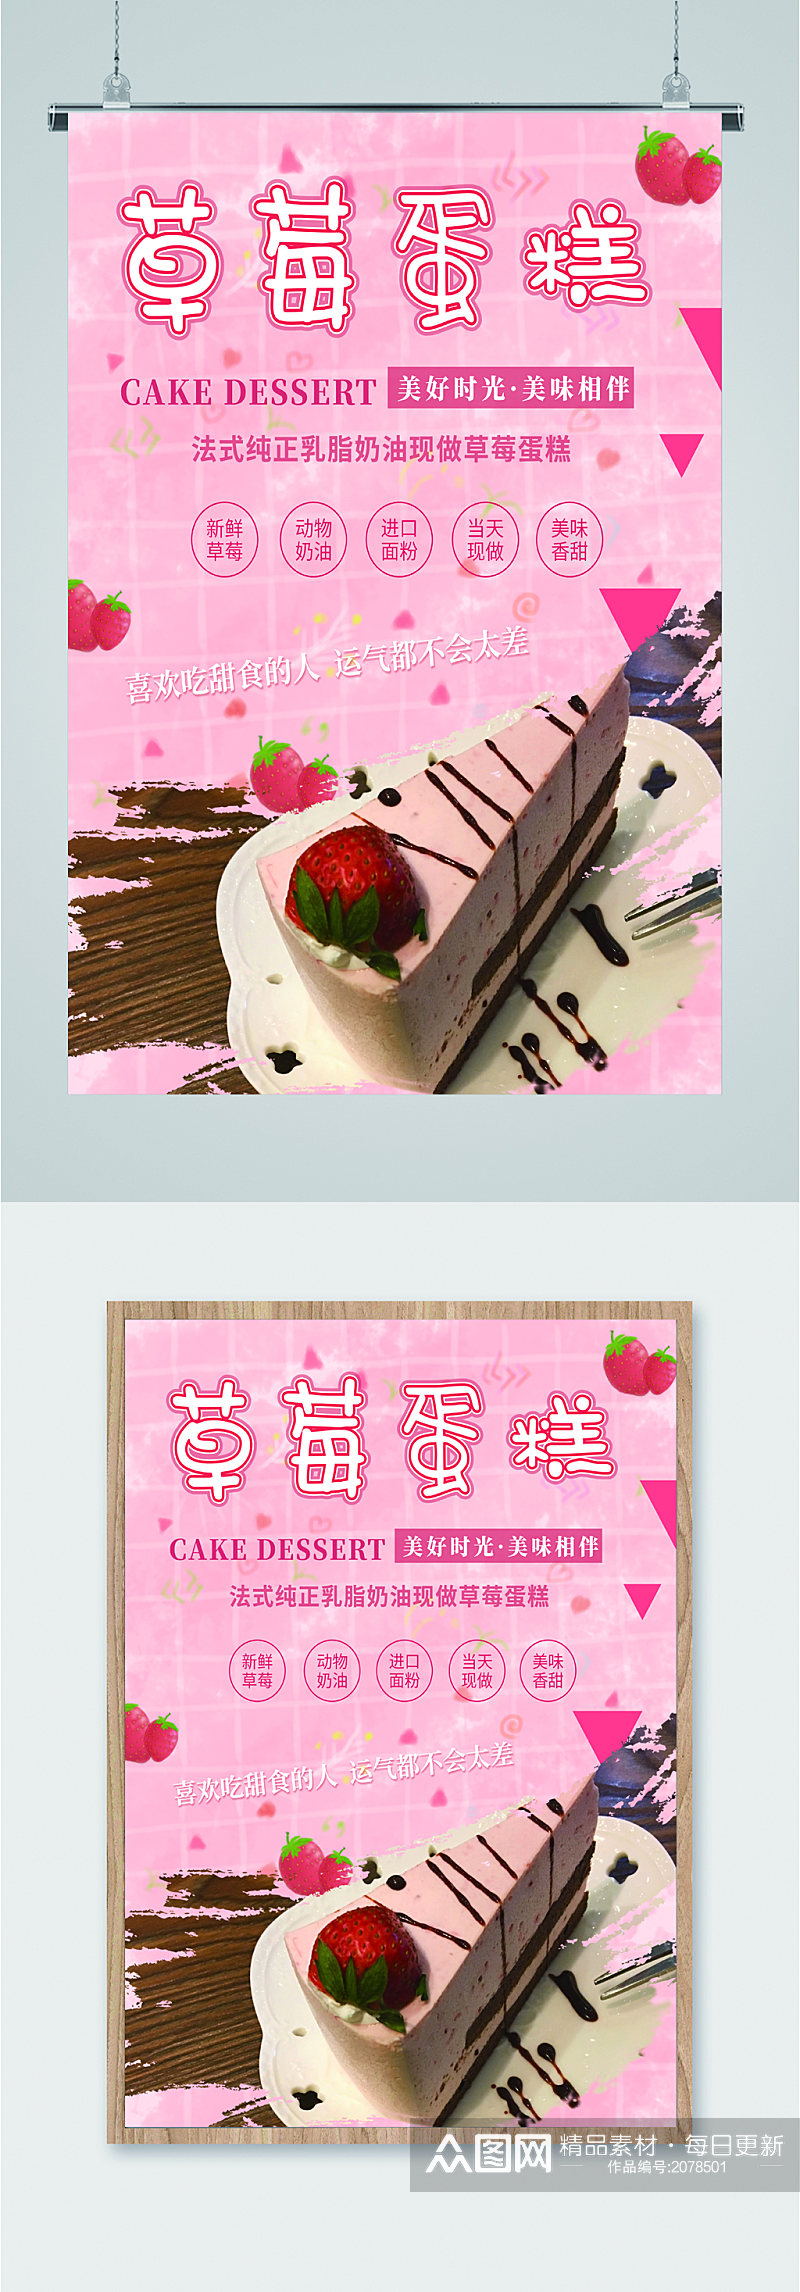 草莓蛋糕甜品海报素材